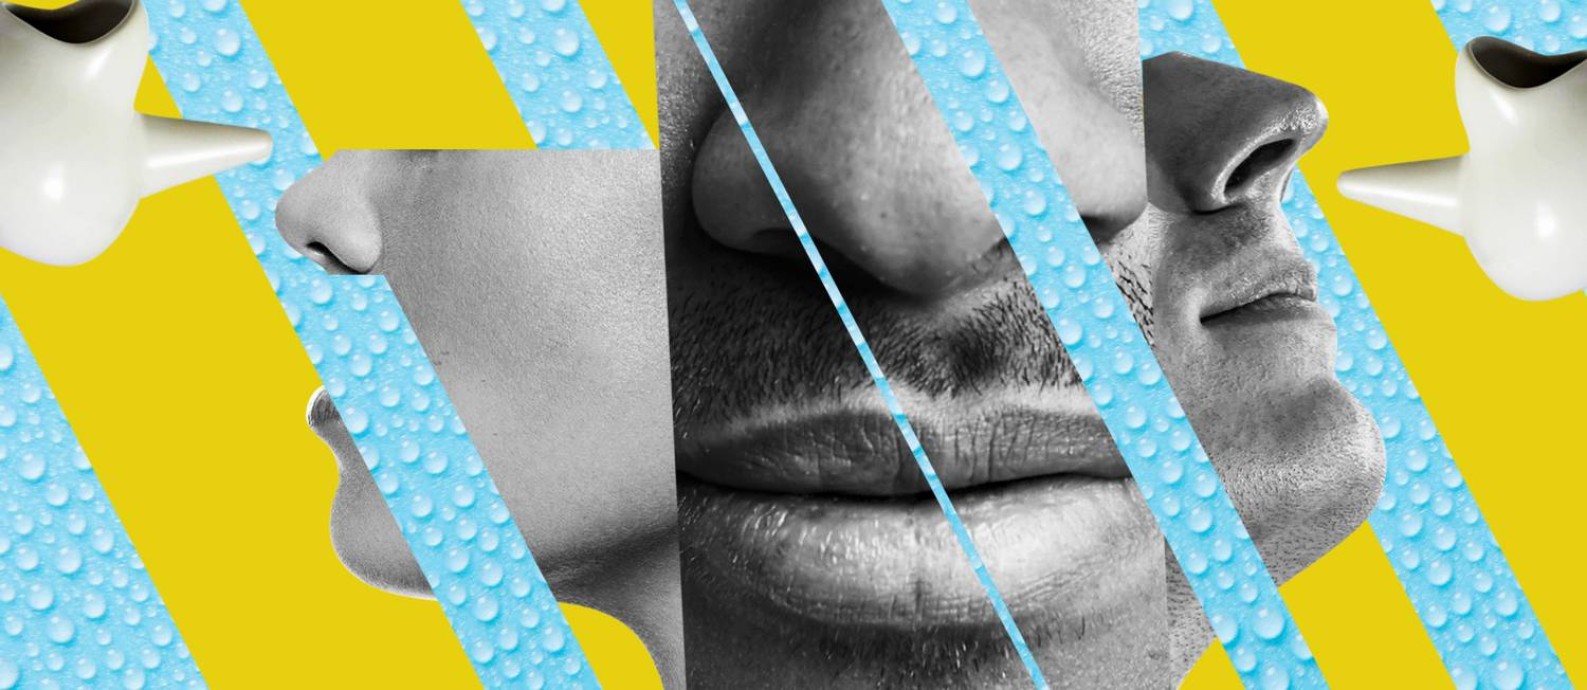 Lota, ou "neti pot", ajuda a limpar o nariz e aliviar sintomas de congestão Foto: Editoria de Arte